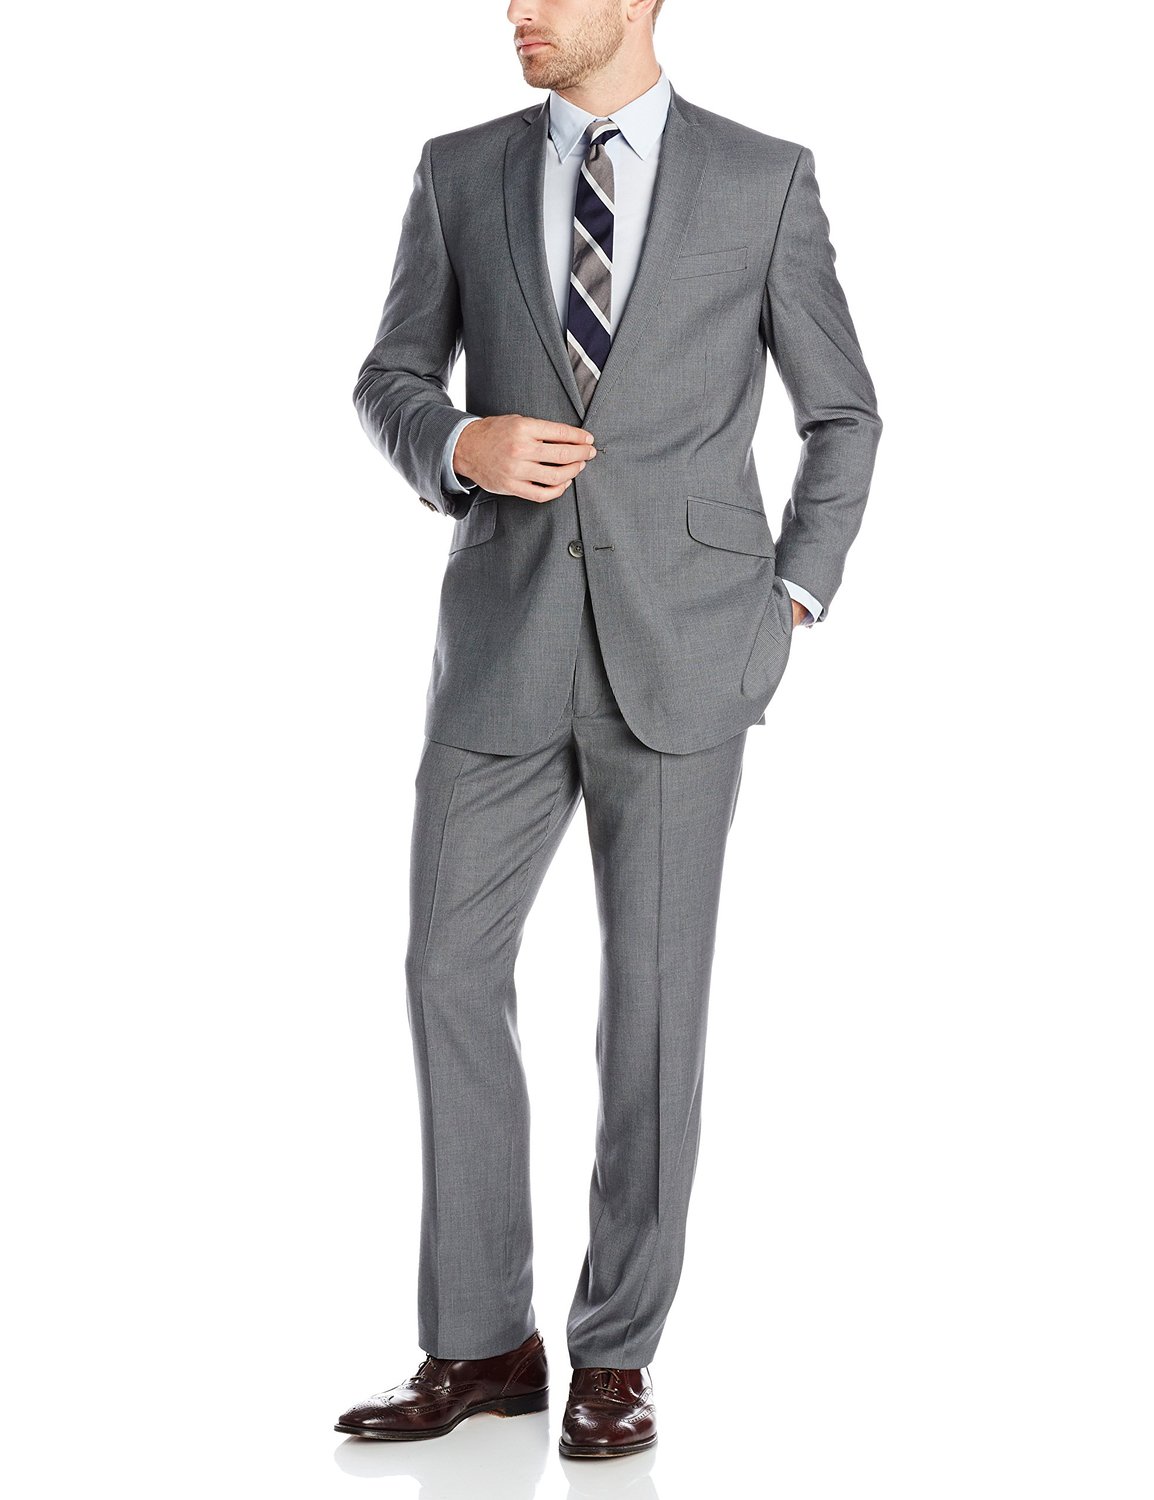 Kenneth Cole REACTION Men's Grey Stripe 2 Button Notch Lapel Suit